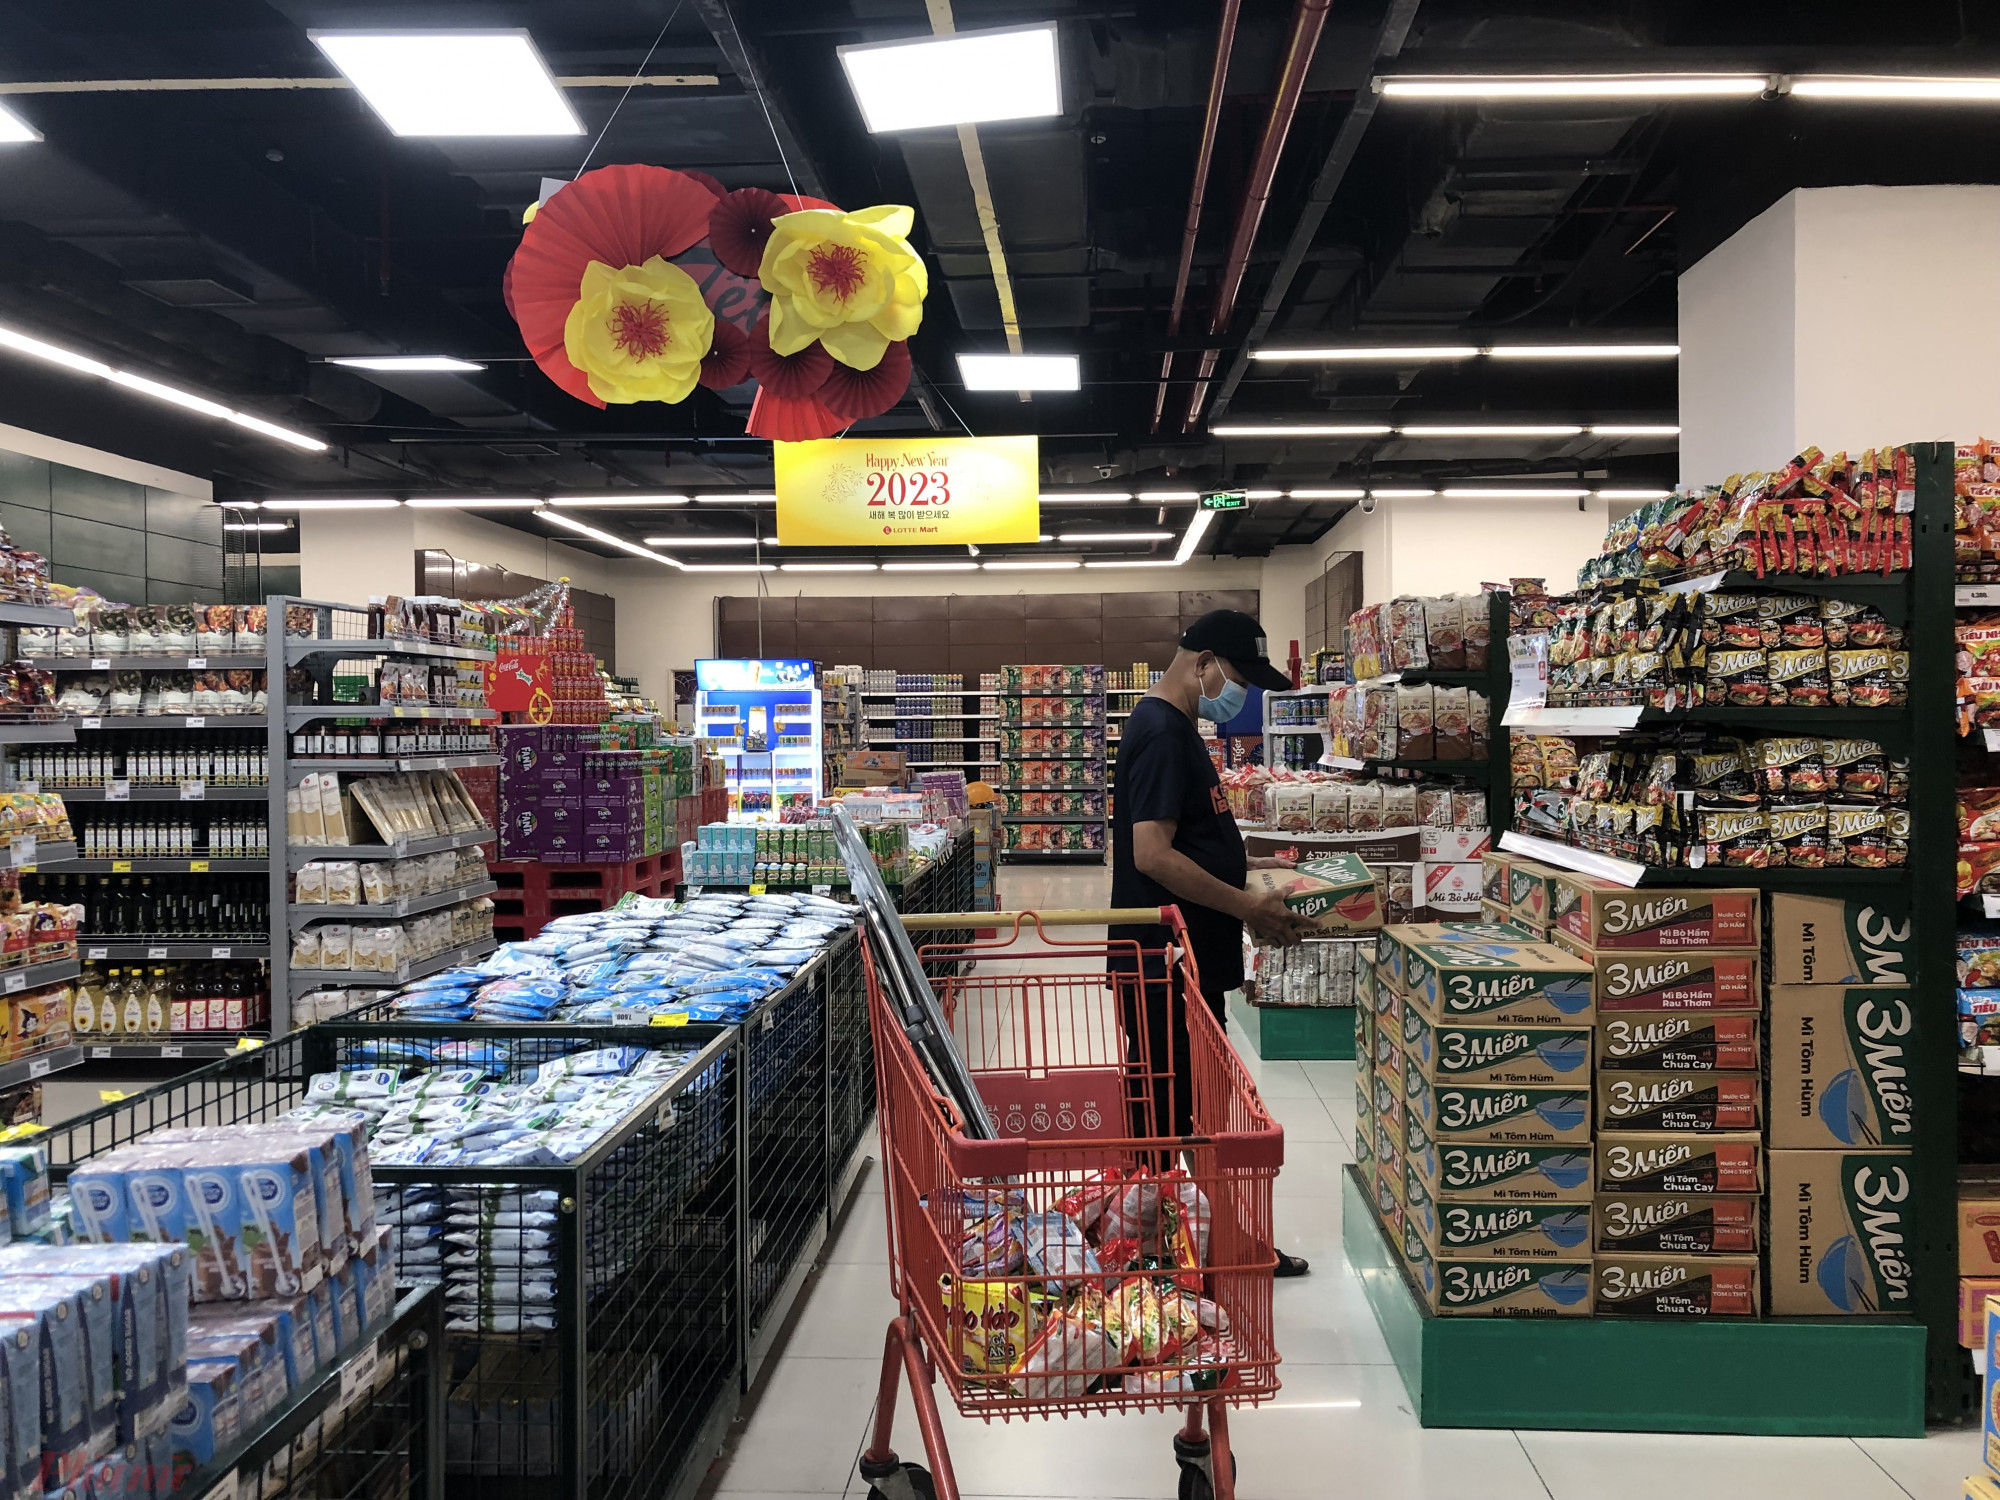 Trong khi đó tại siêu thị LotteMart Lê Đại Hành (quận 11, TPHCM), chỉ có chương trình khuyến mãi dành cho Tết 2023, không có chương trình riêng cho ngày 12/12.